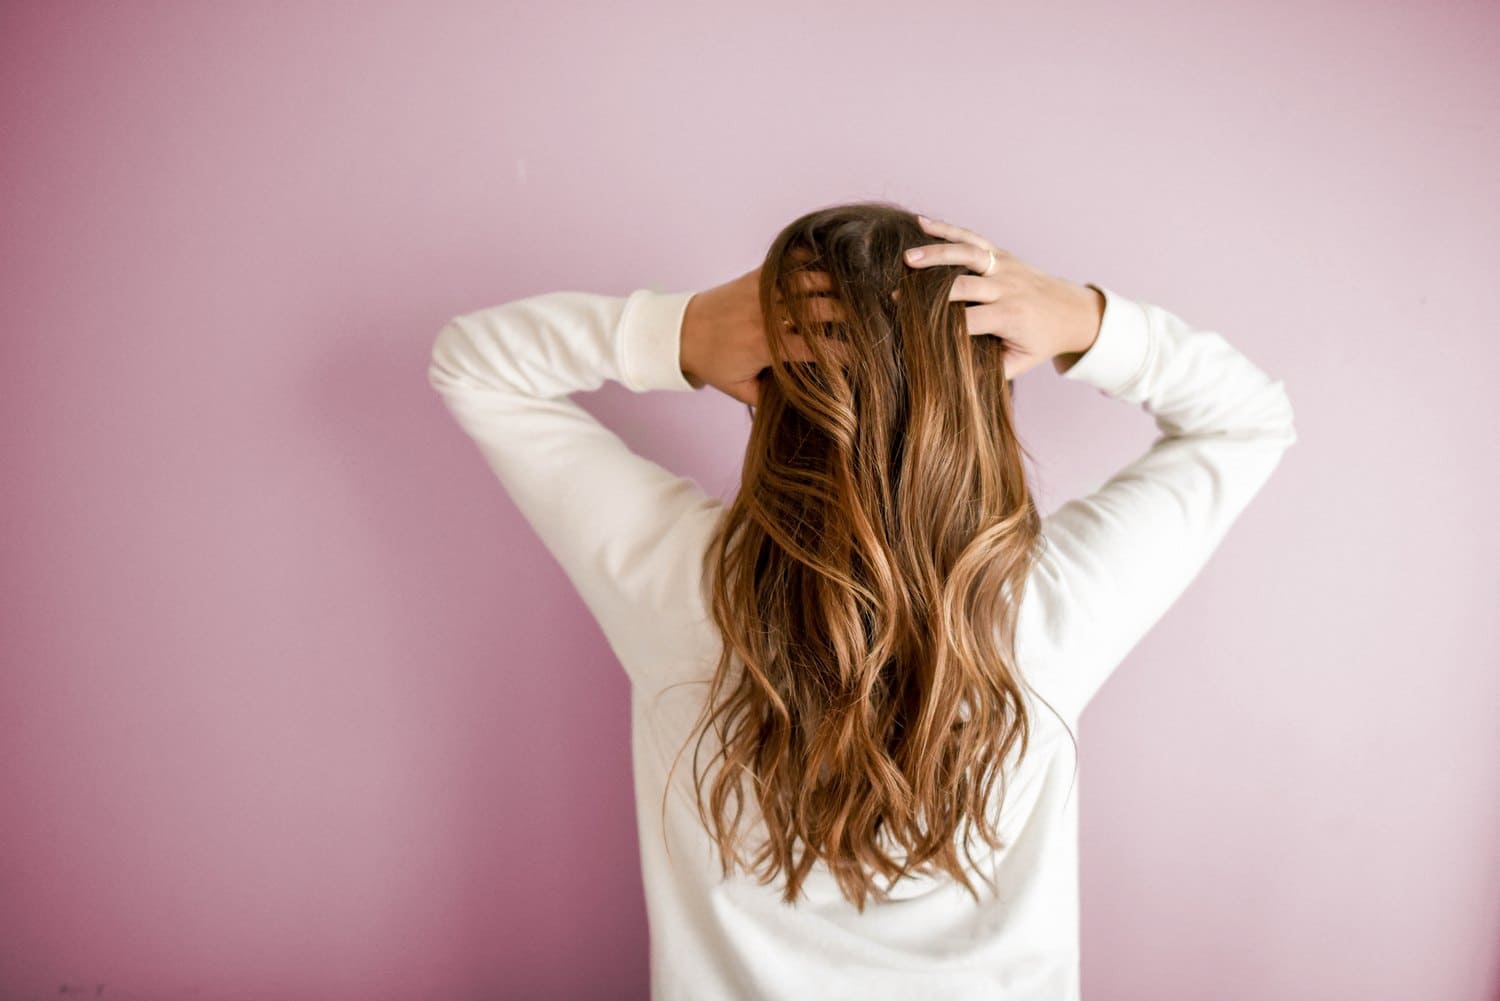 Трихолог Кингсли: ополаскивание головы холодной водой приведет к выпадению волос